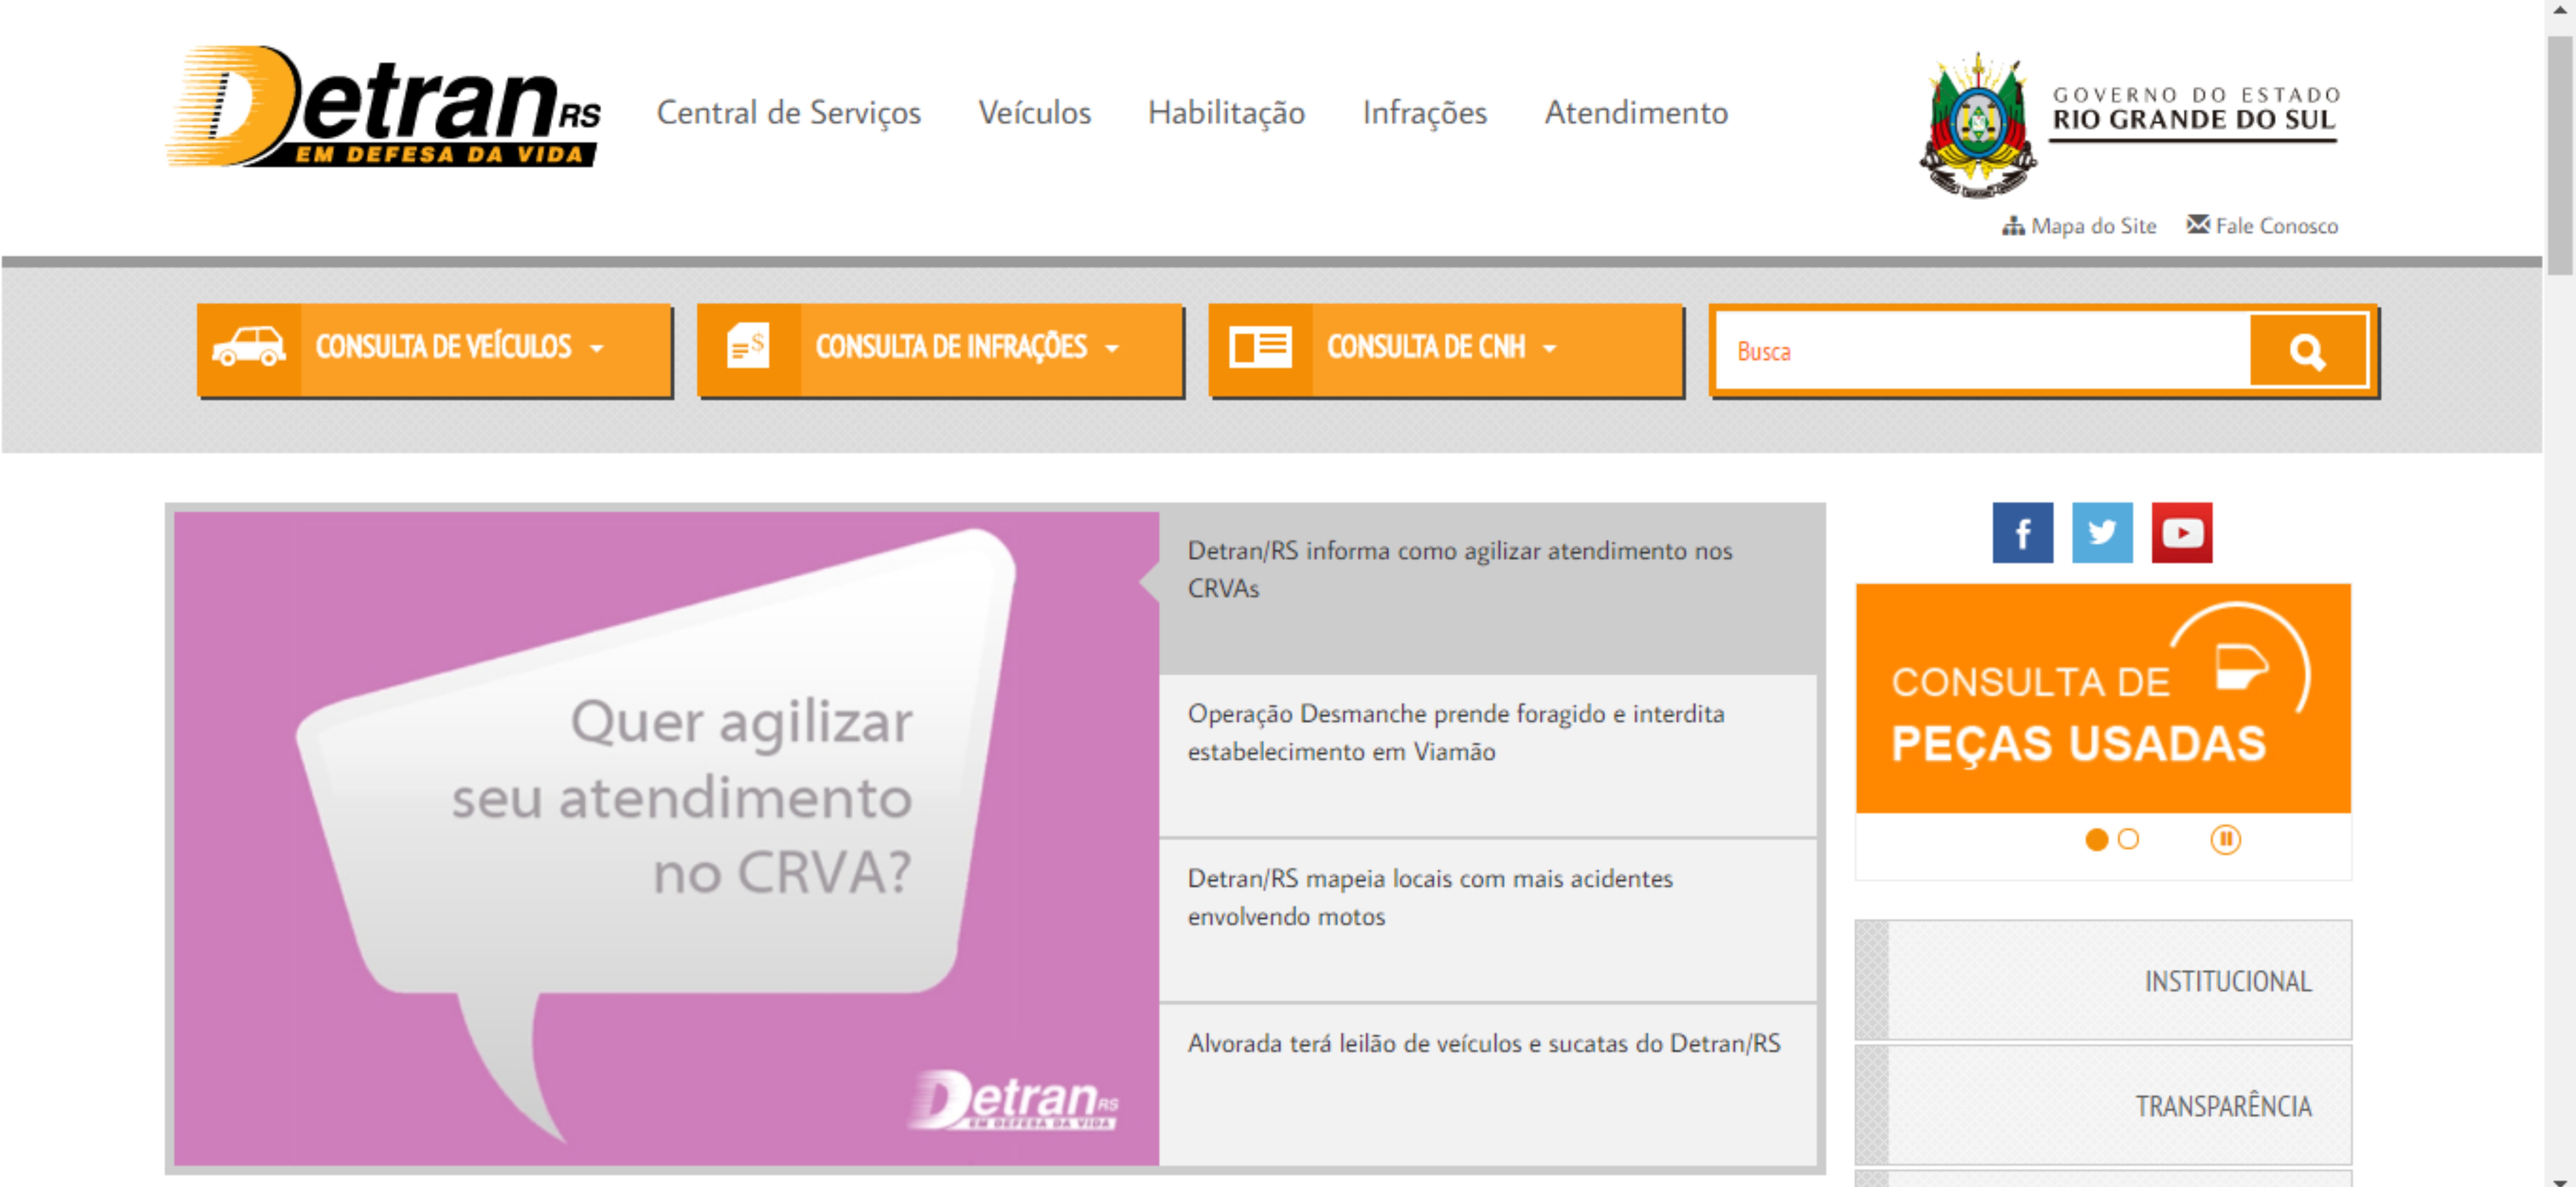 Após visita de Júlio Galperim, Detran/RS lança campanha institucional para agilizar atendimentos no CRVA